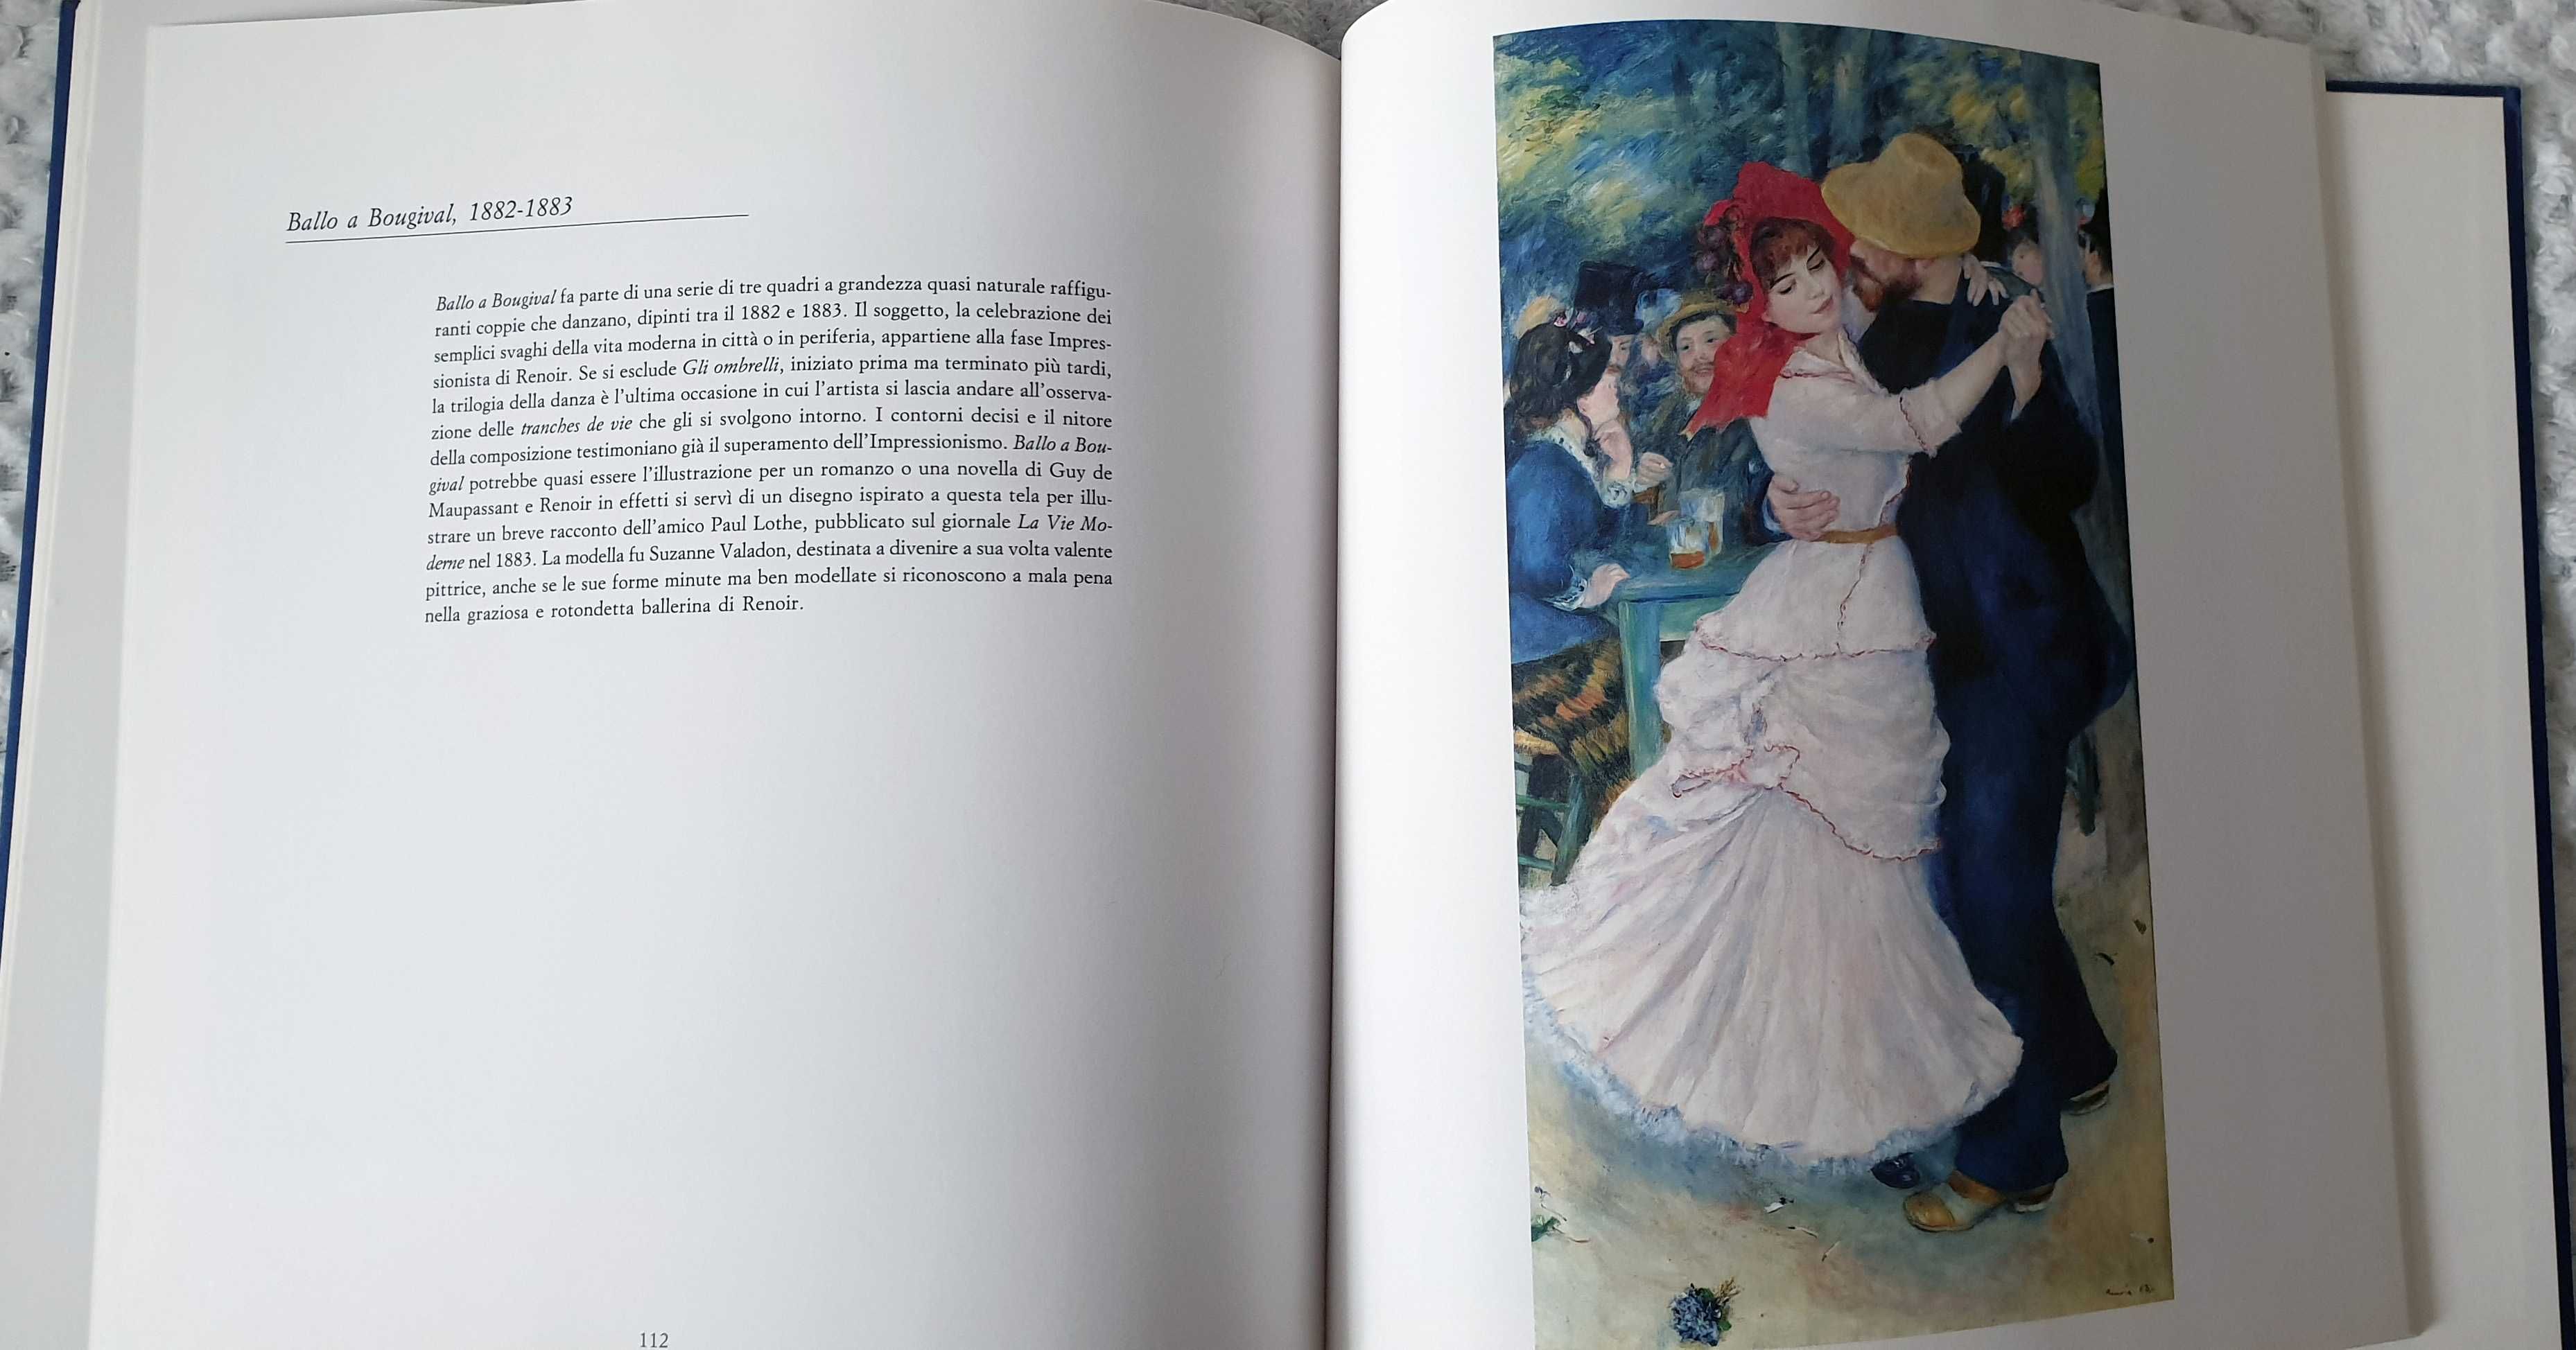 Carte/ album pictura in lb. italiana - Renoir